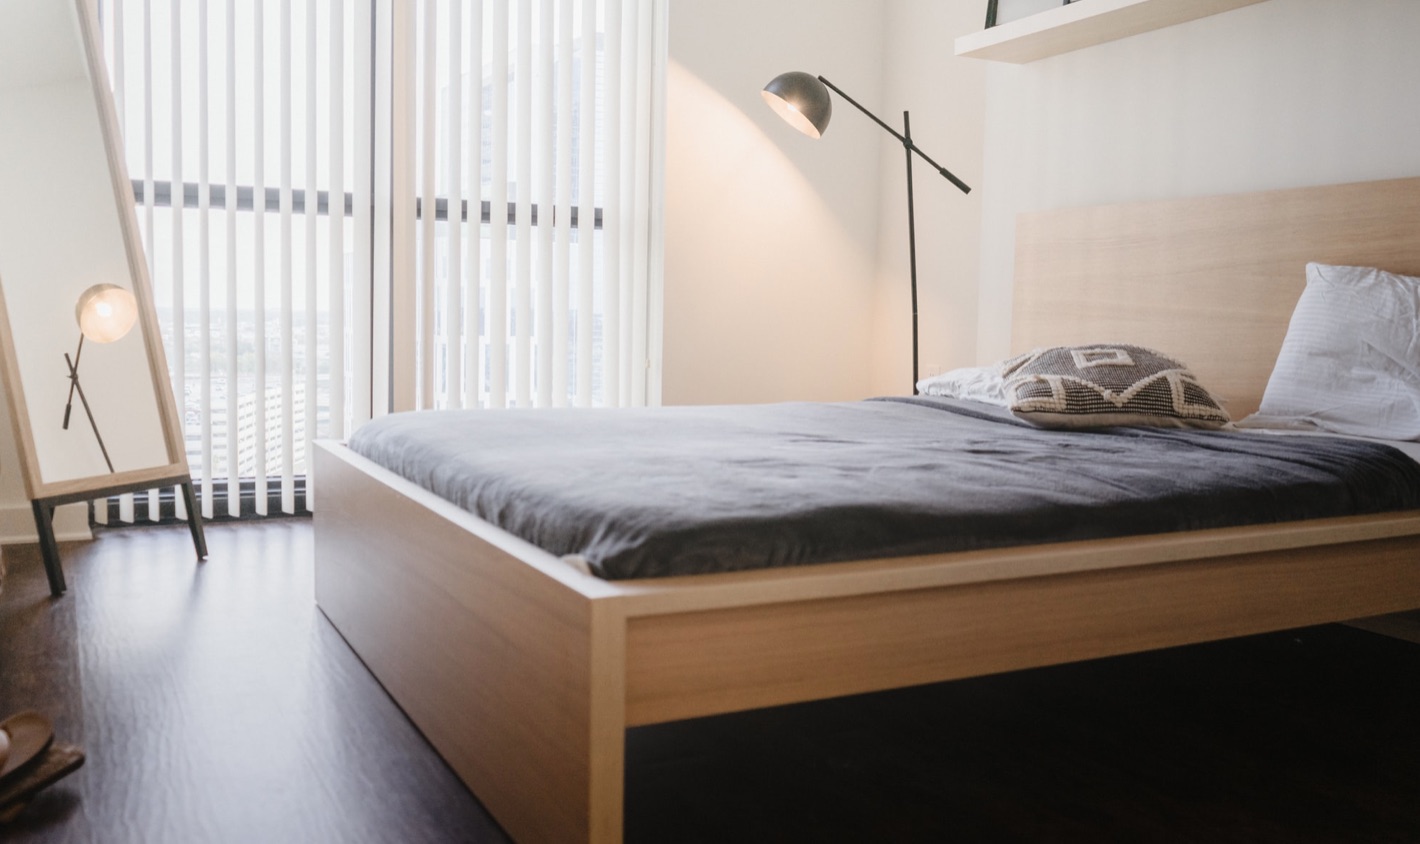 8 Desain Tempat Tidur Kayu Sederhana Yang Nyaman Blog Ruparupa